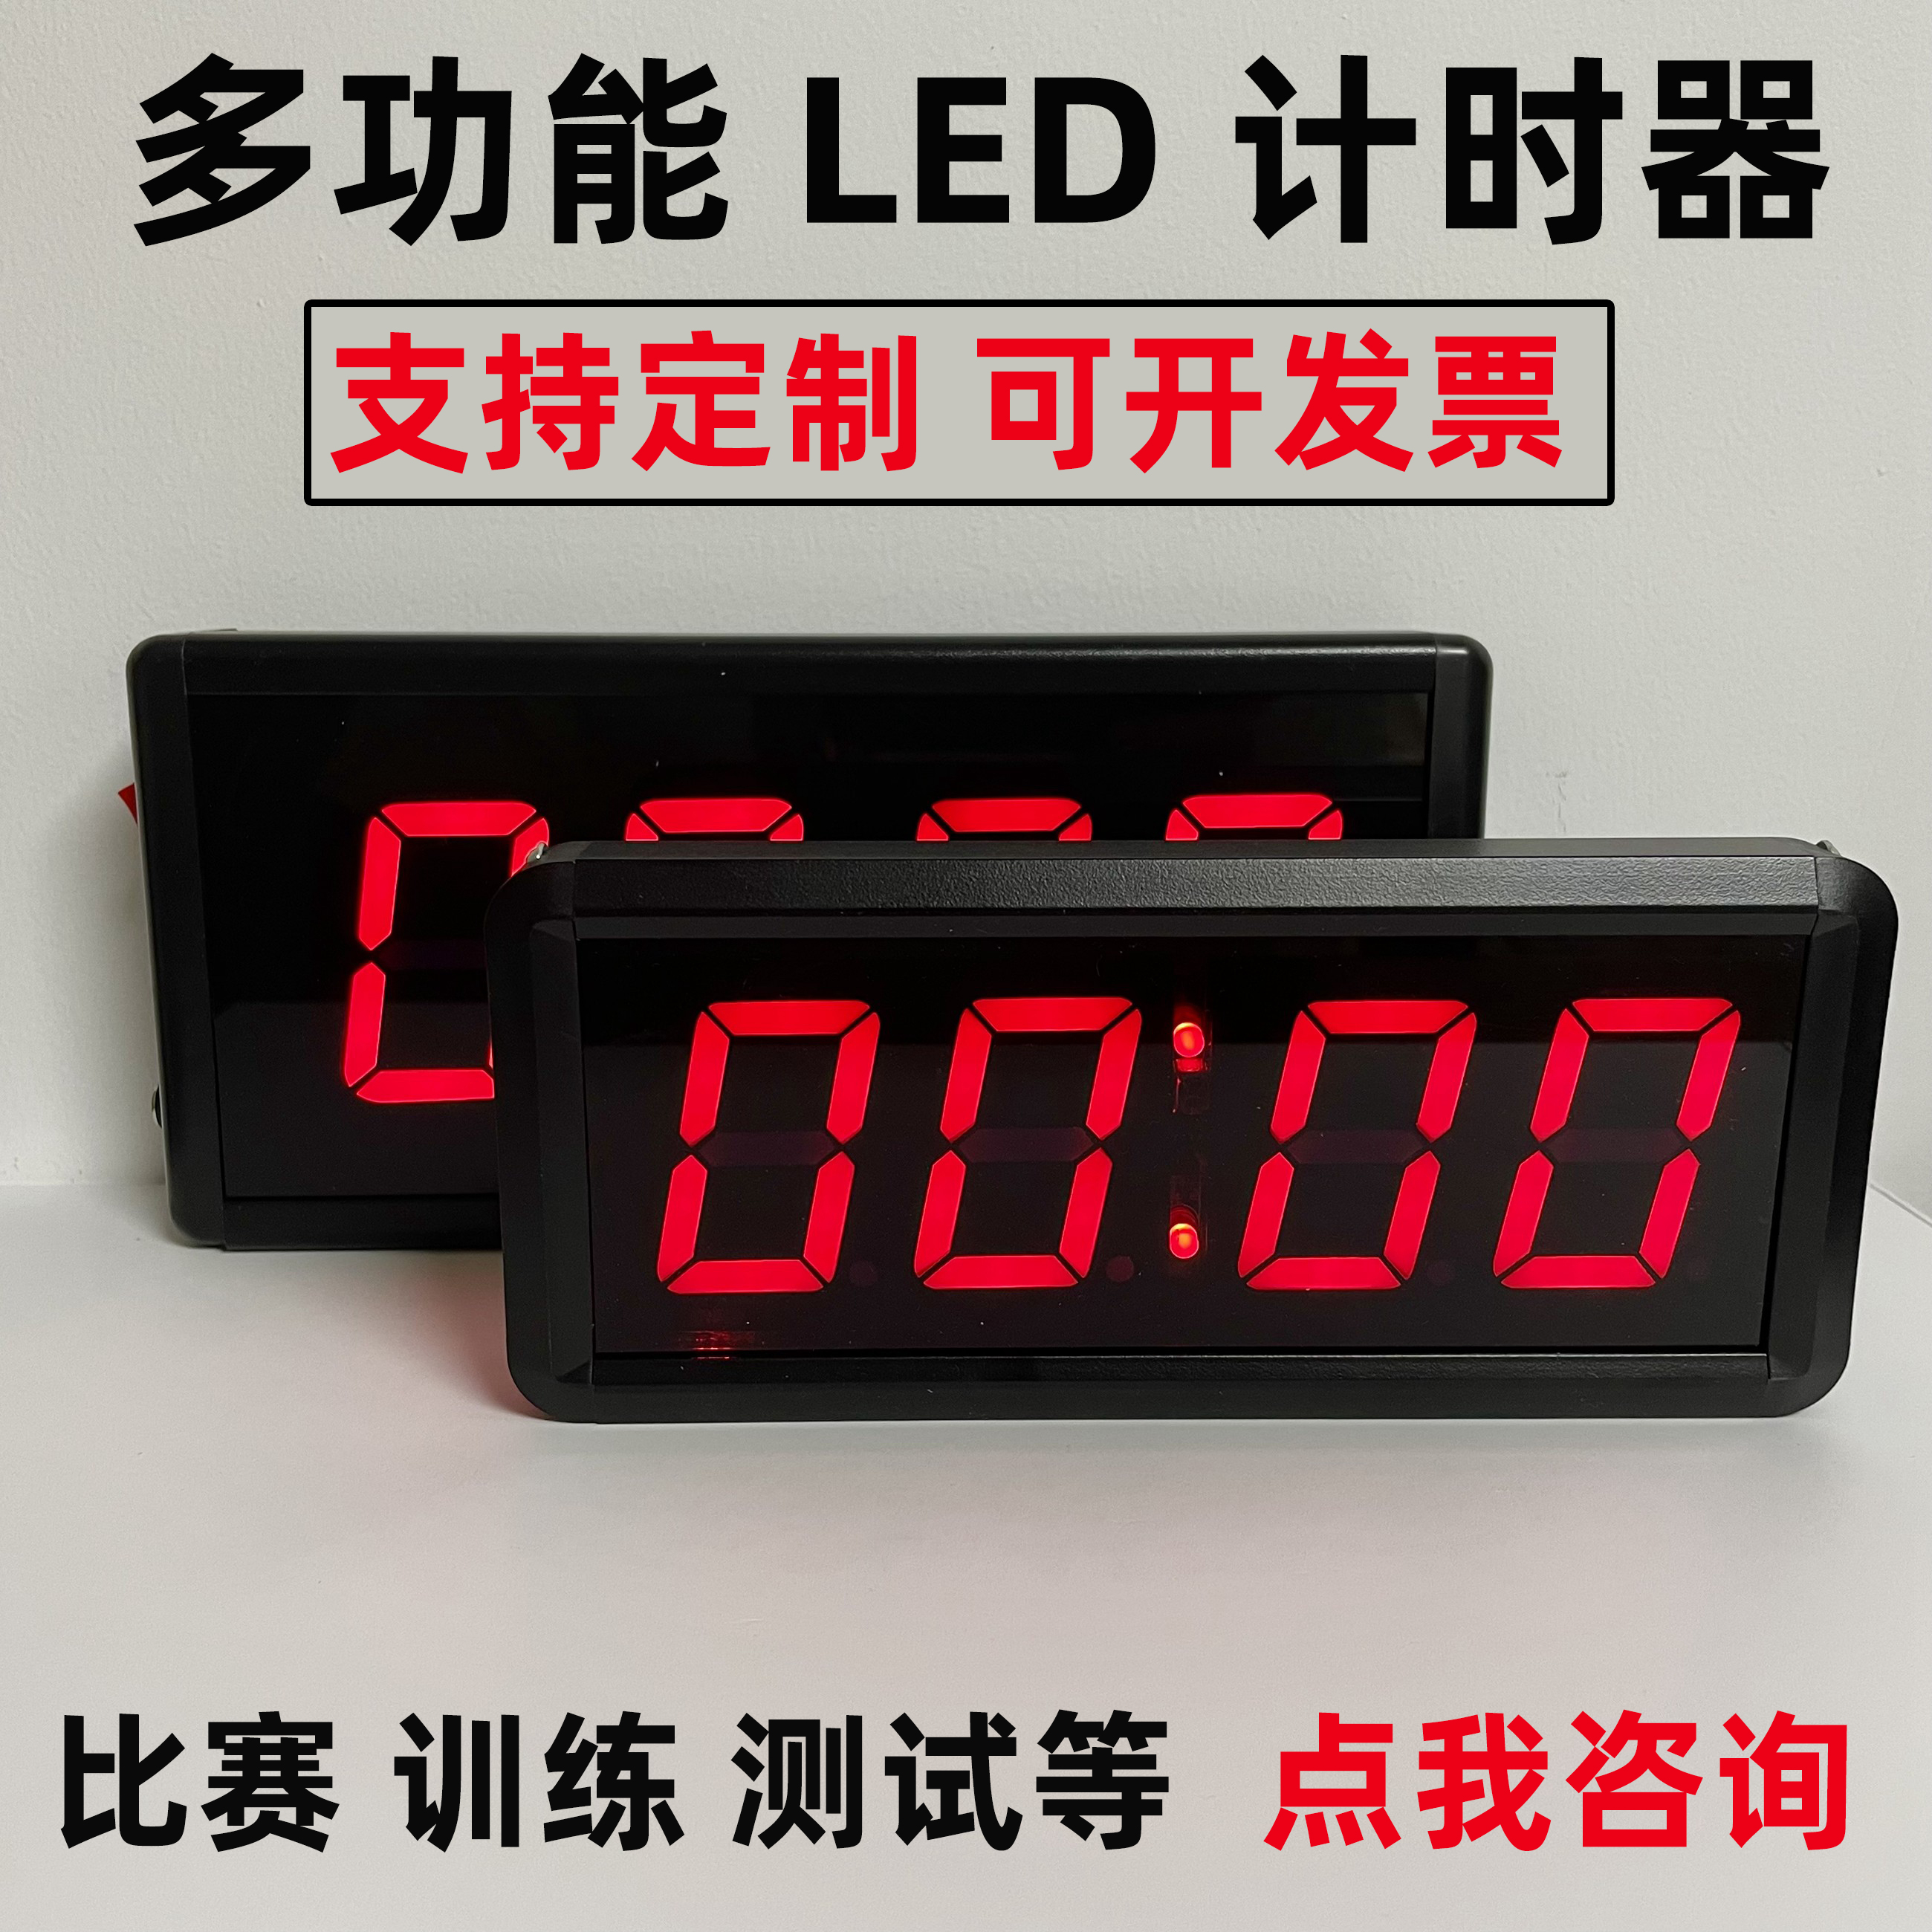 LED电子计时器 多功能运动比赛训